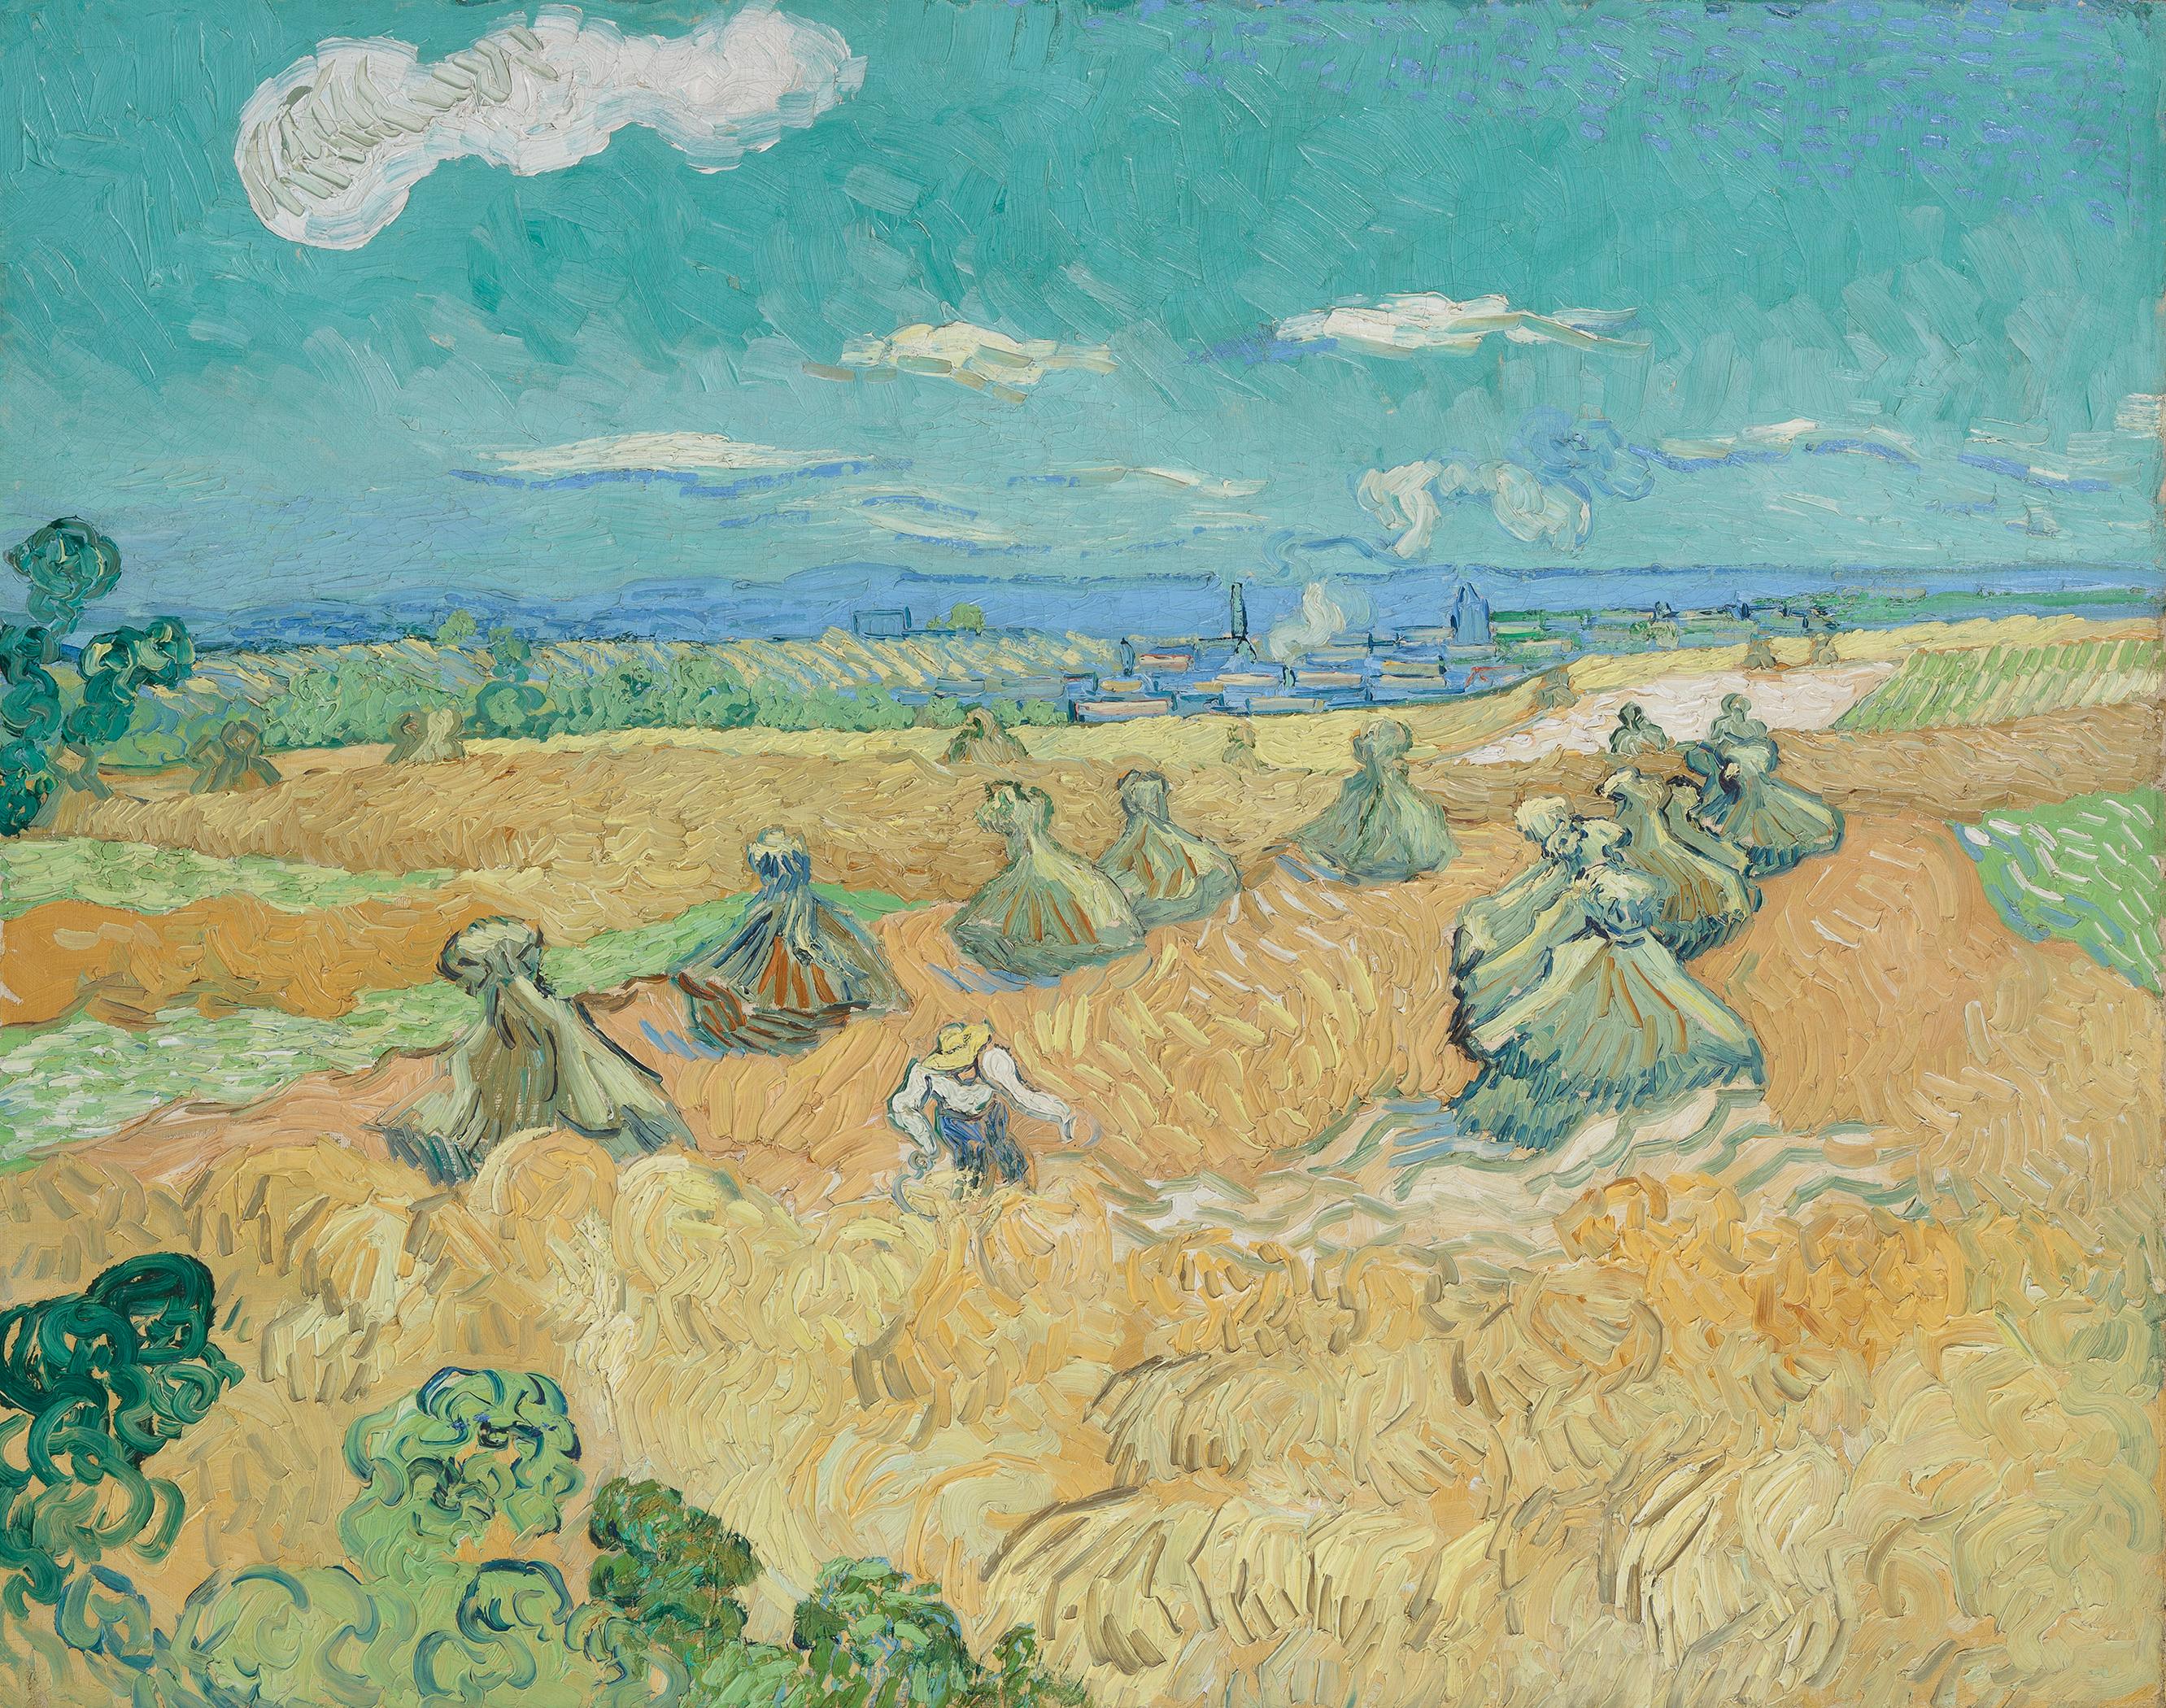 麥田與收割者，歐韋爾 by Vincent van Gogh - 1890 年 - 73.6 x 93 釐米 